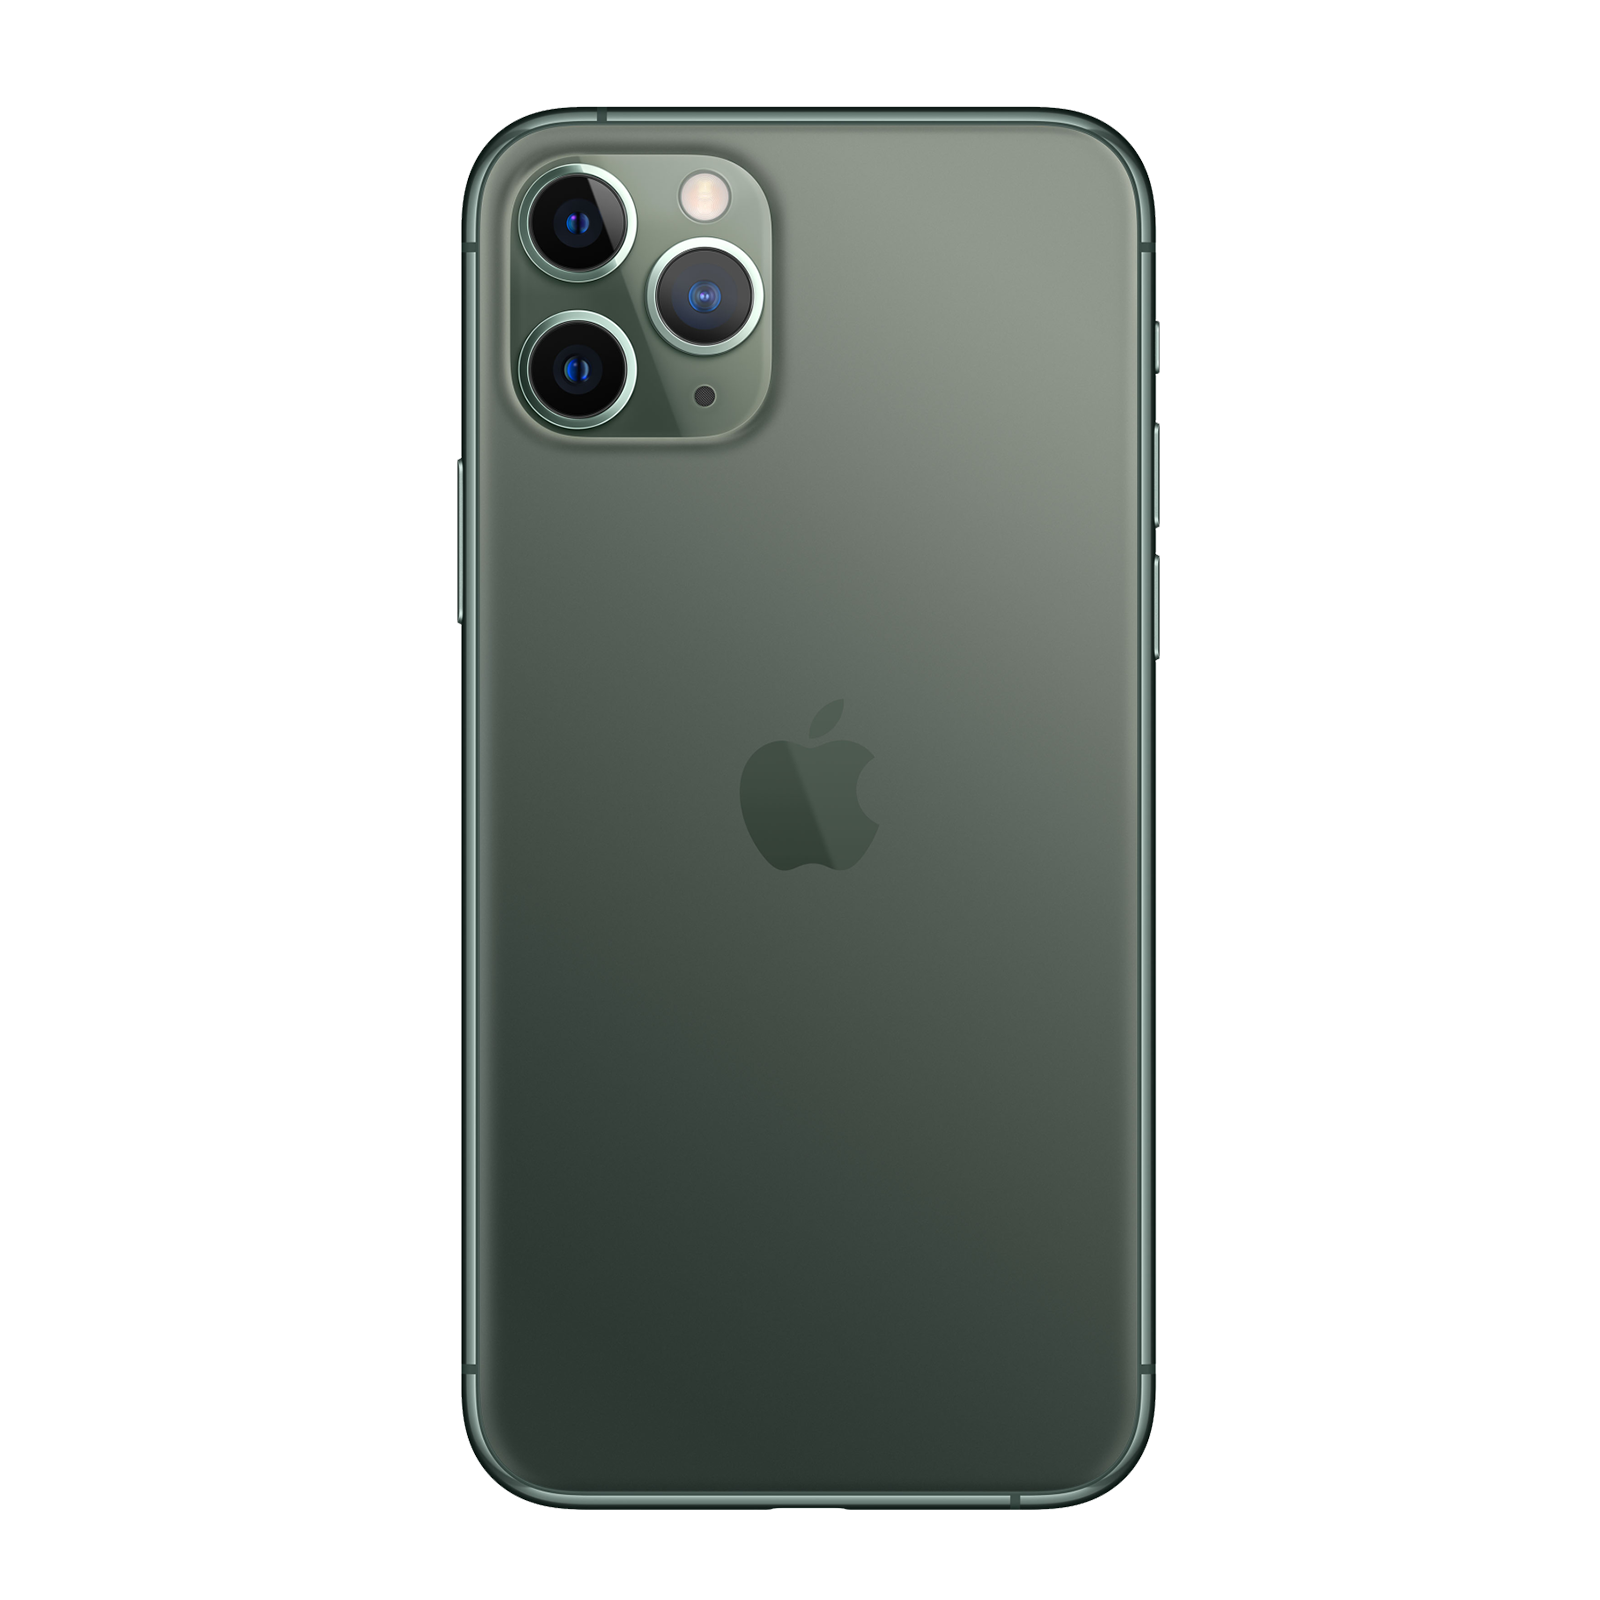 iPhone11 Pro Max 64GB